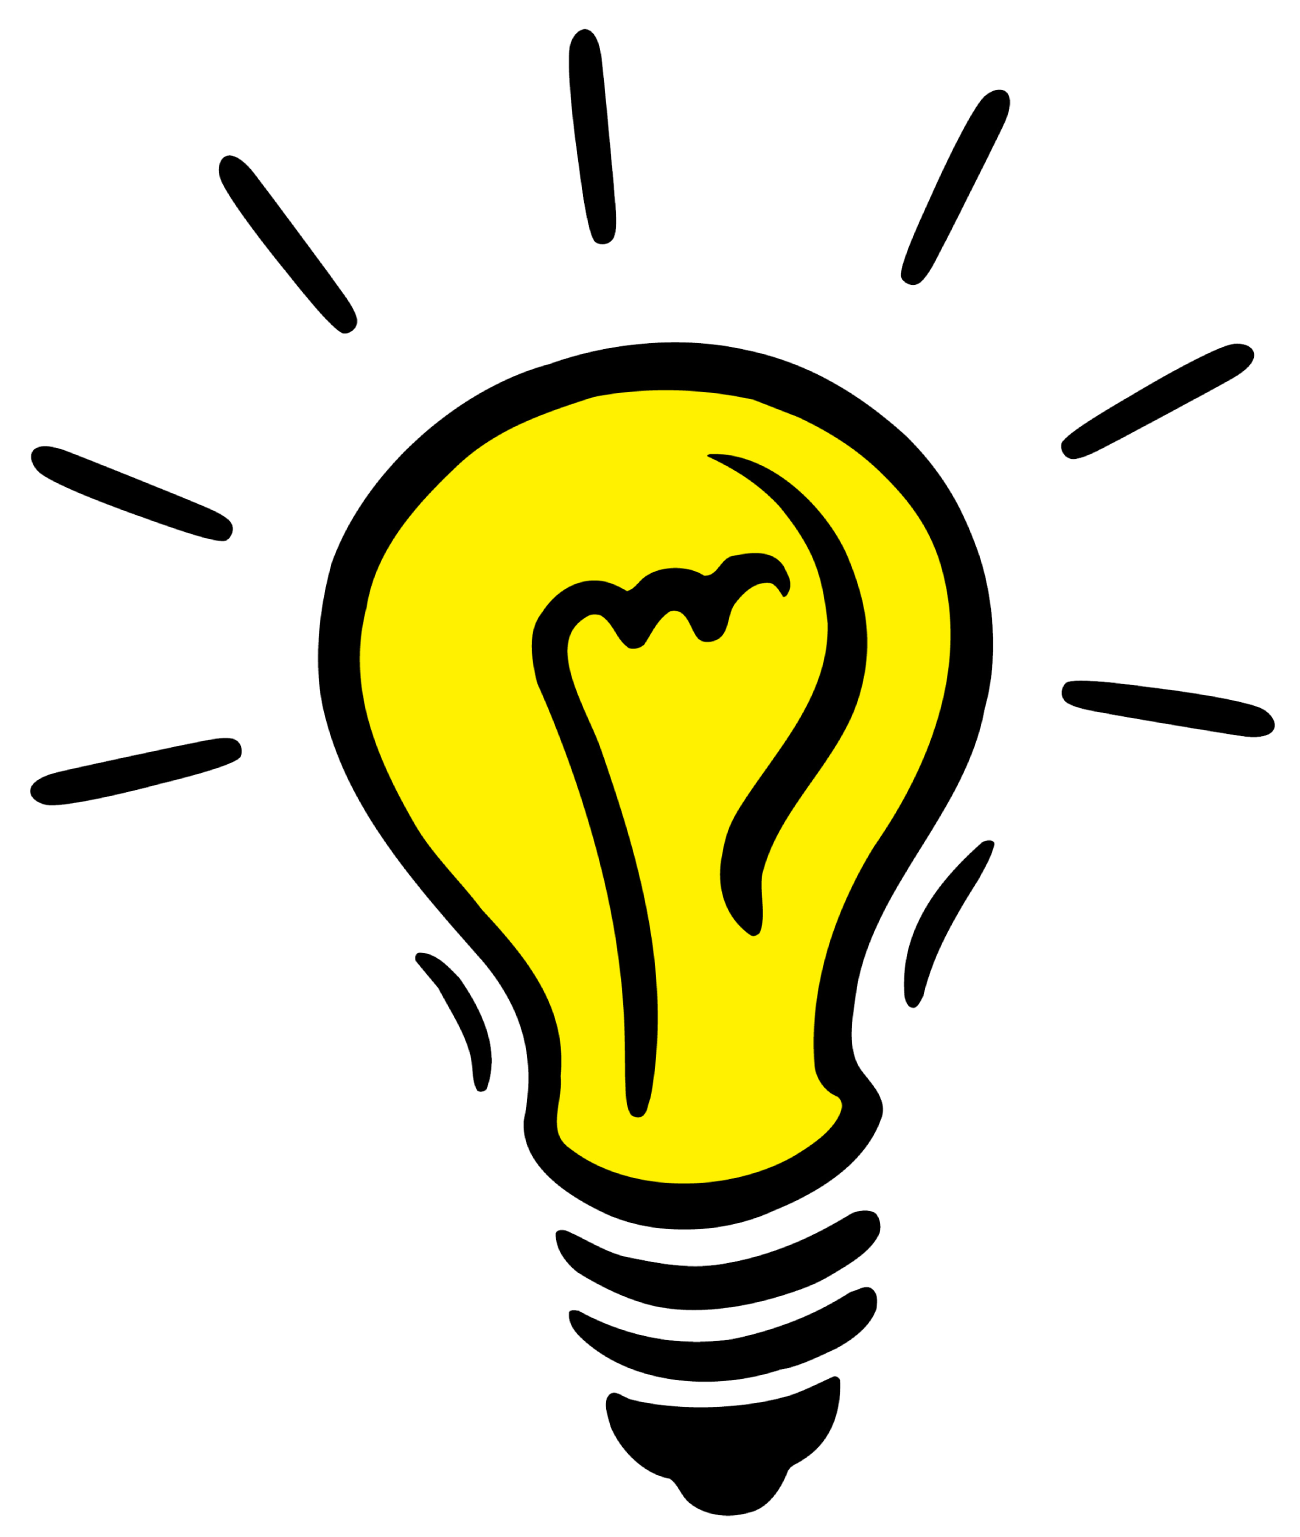 kisspng-incandescent-light-bulb-idea-light-emitting-diode-idea-bulb-transparent-png-5a78f98690fd19